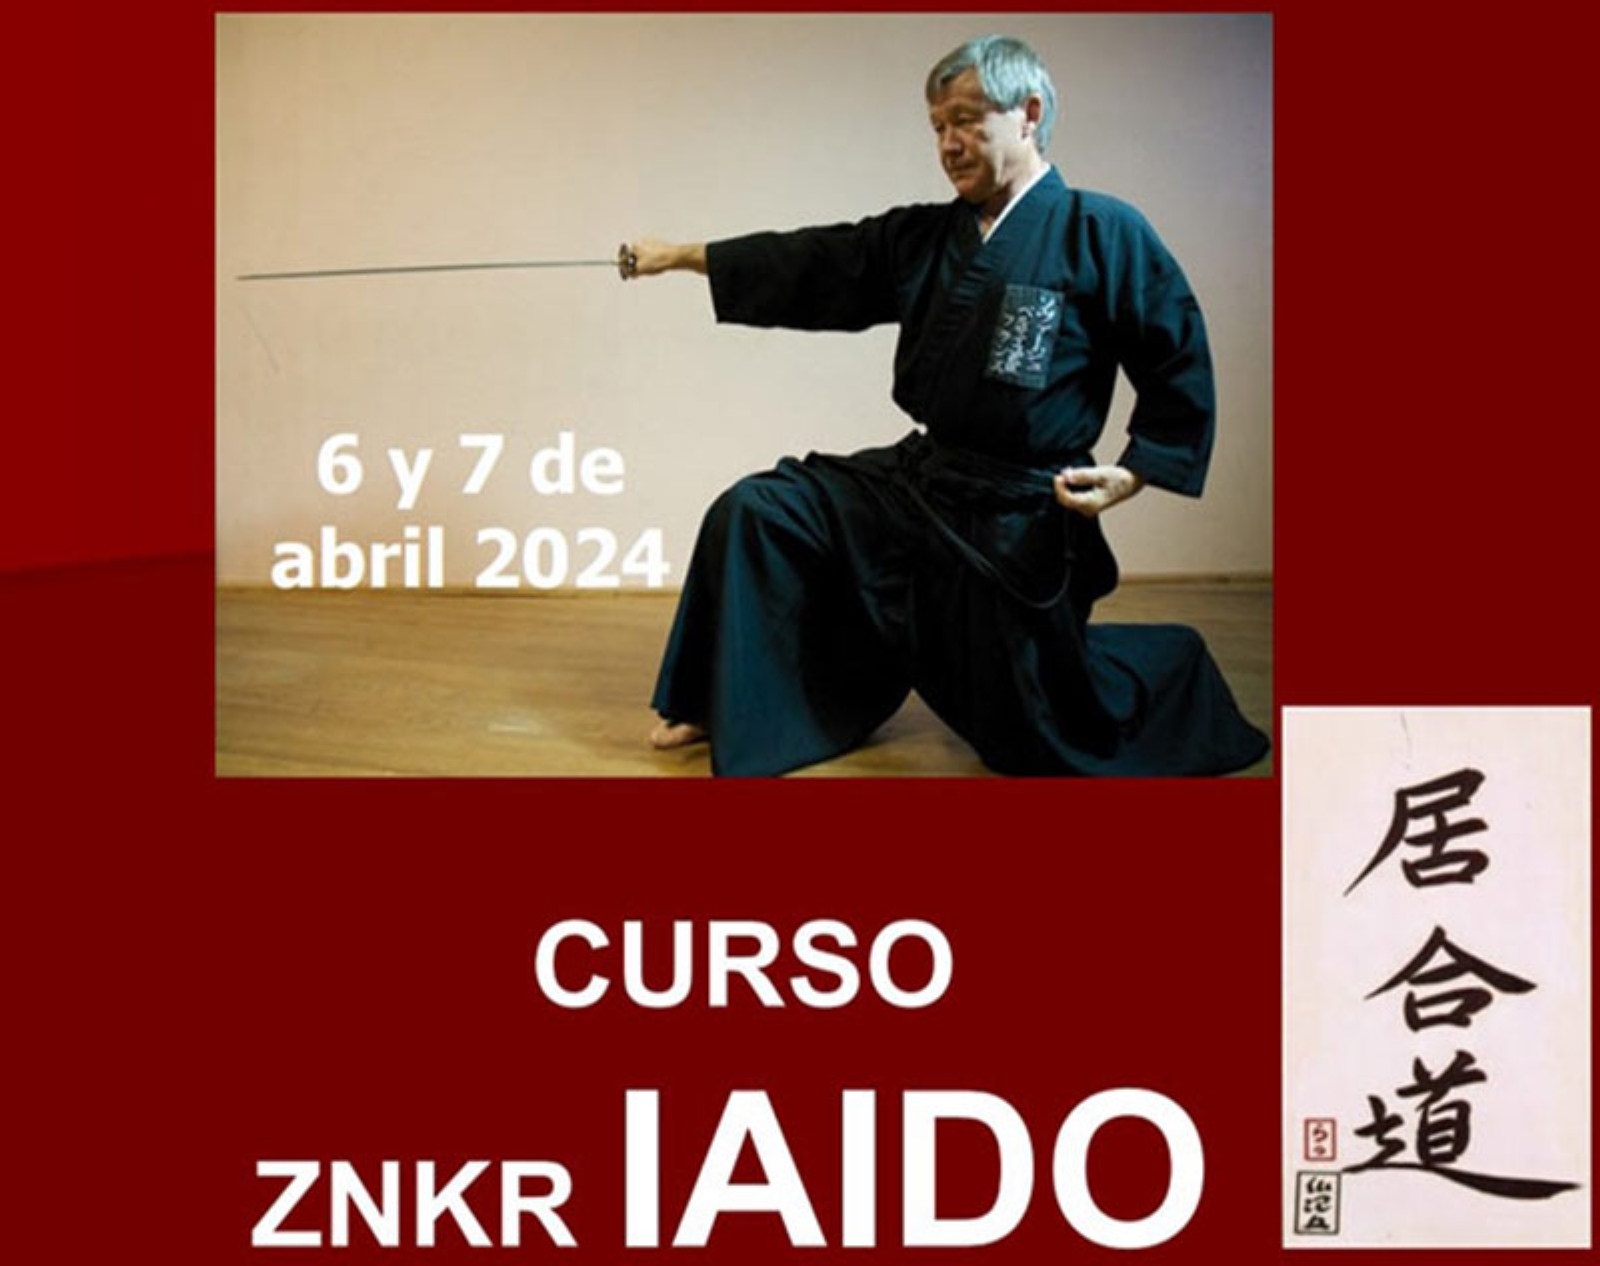 Curso ZNKR Iaido 2024 en Cunit